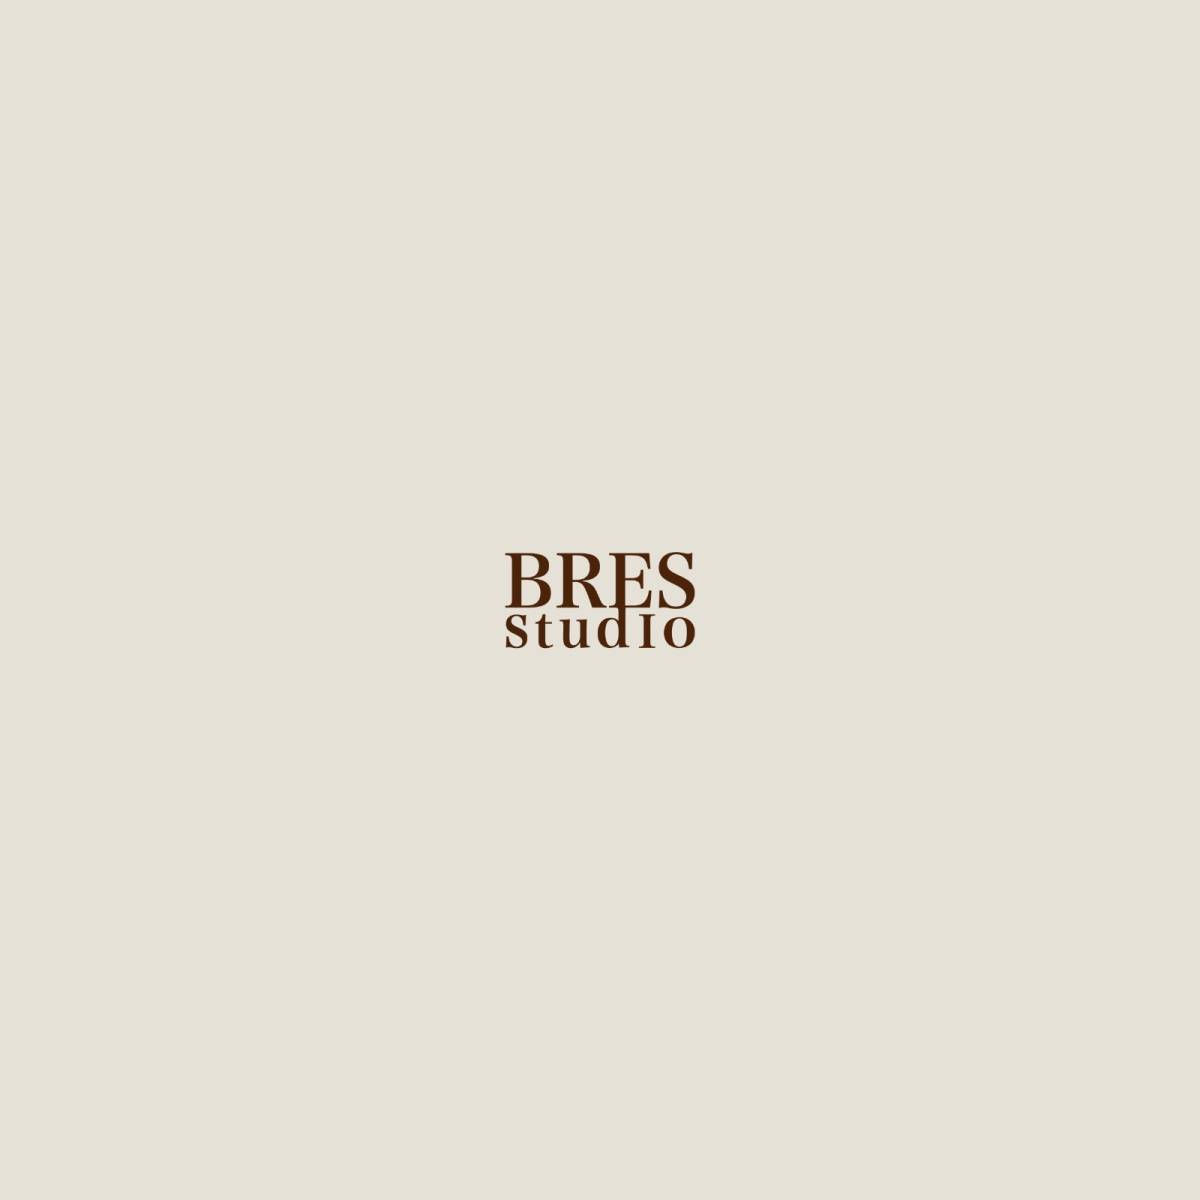 BRES studio - Lisboa - Decoração de Interiores Online